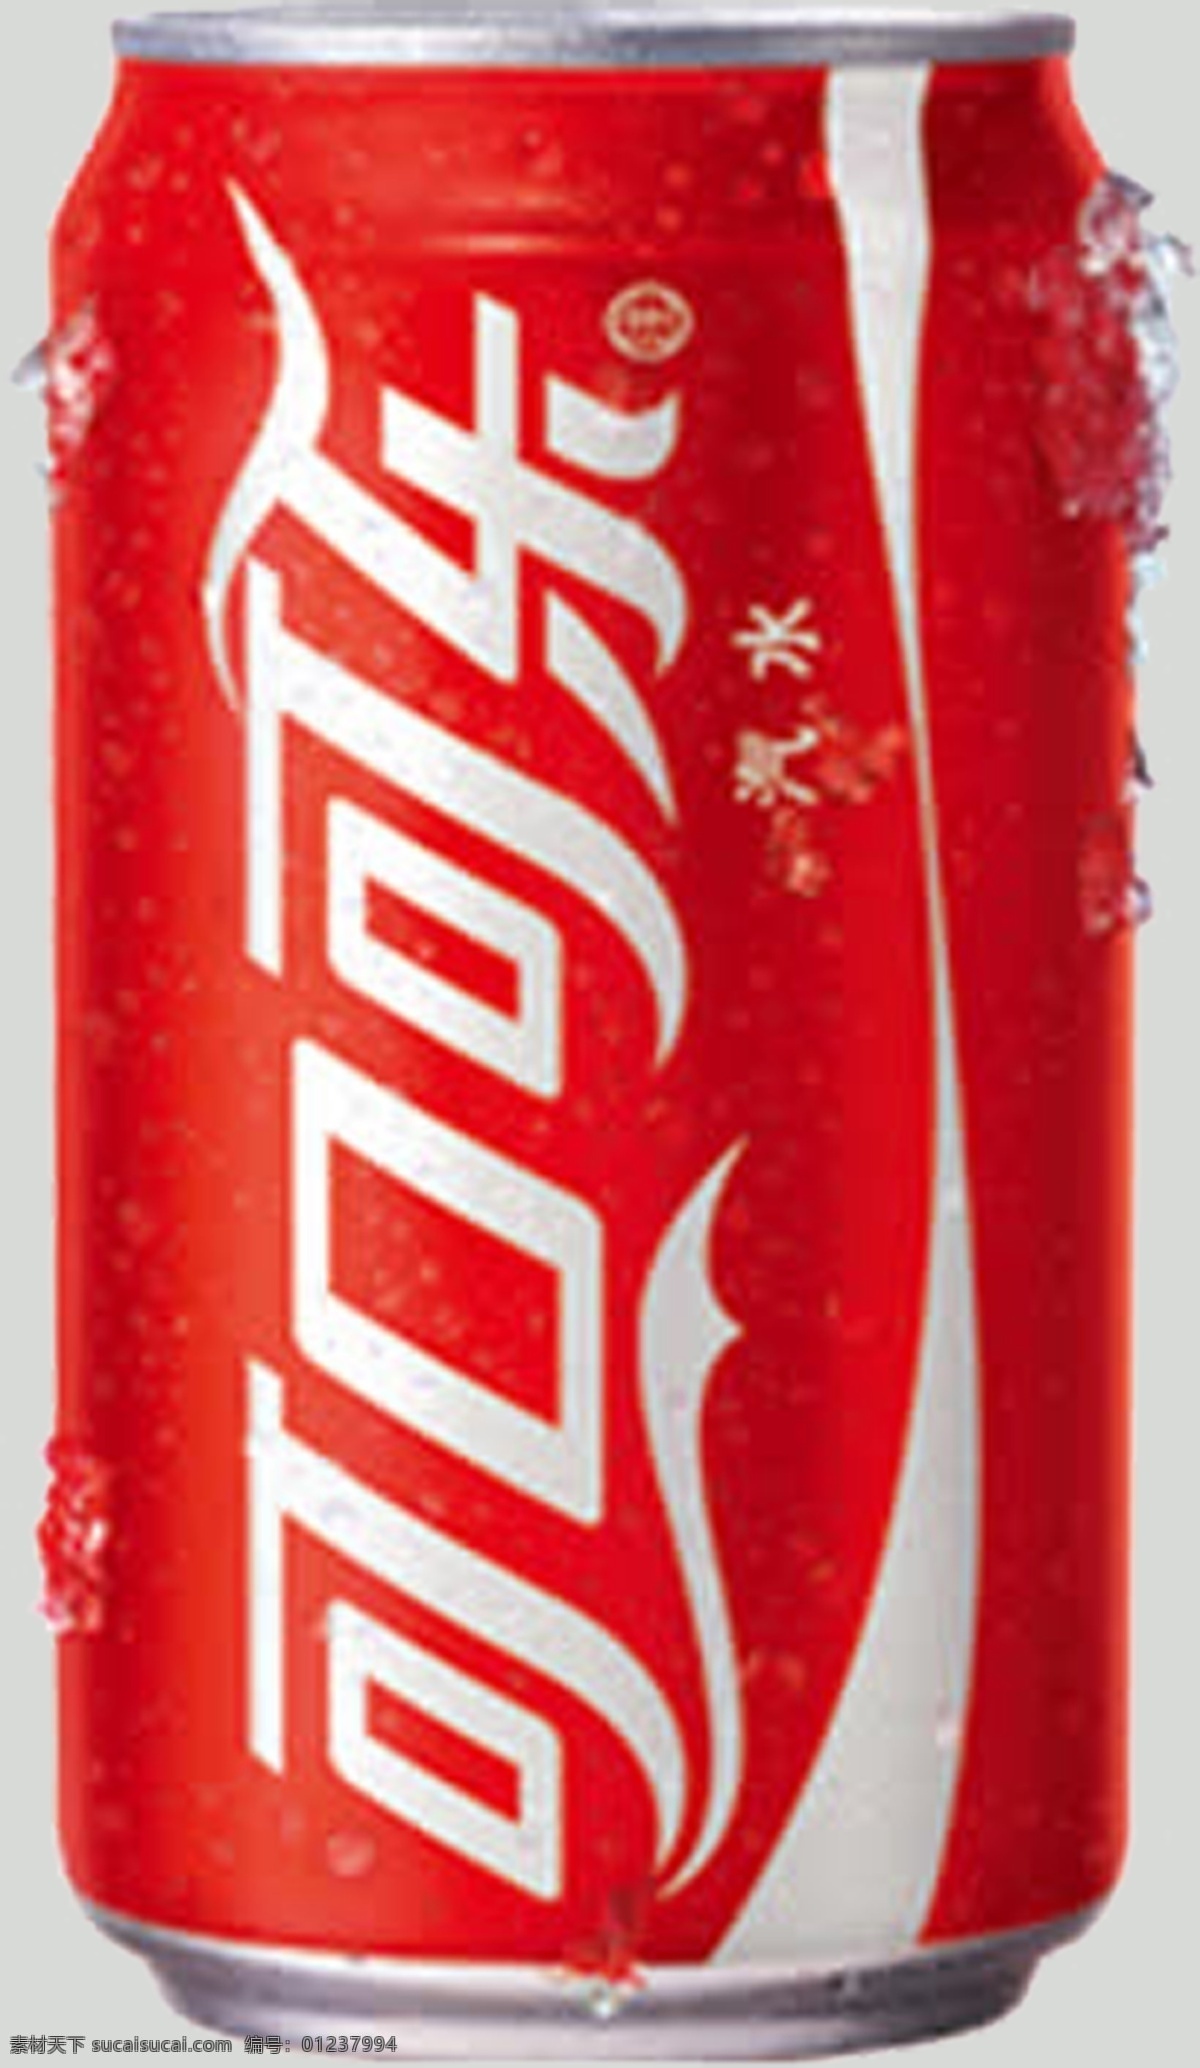 可乐 可乐免扣 可口可乐免扣 可乐素材 可口可乐素材 易拉罐可乐 可乐易拉罐 生活百科 餐饮美食